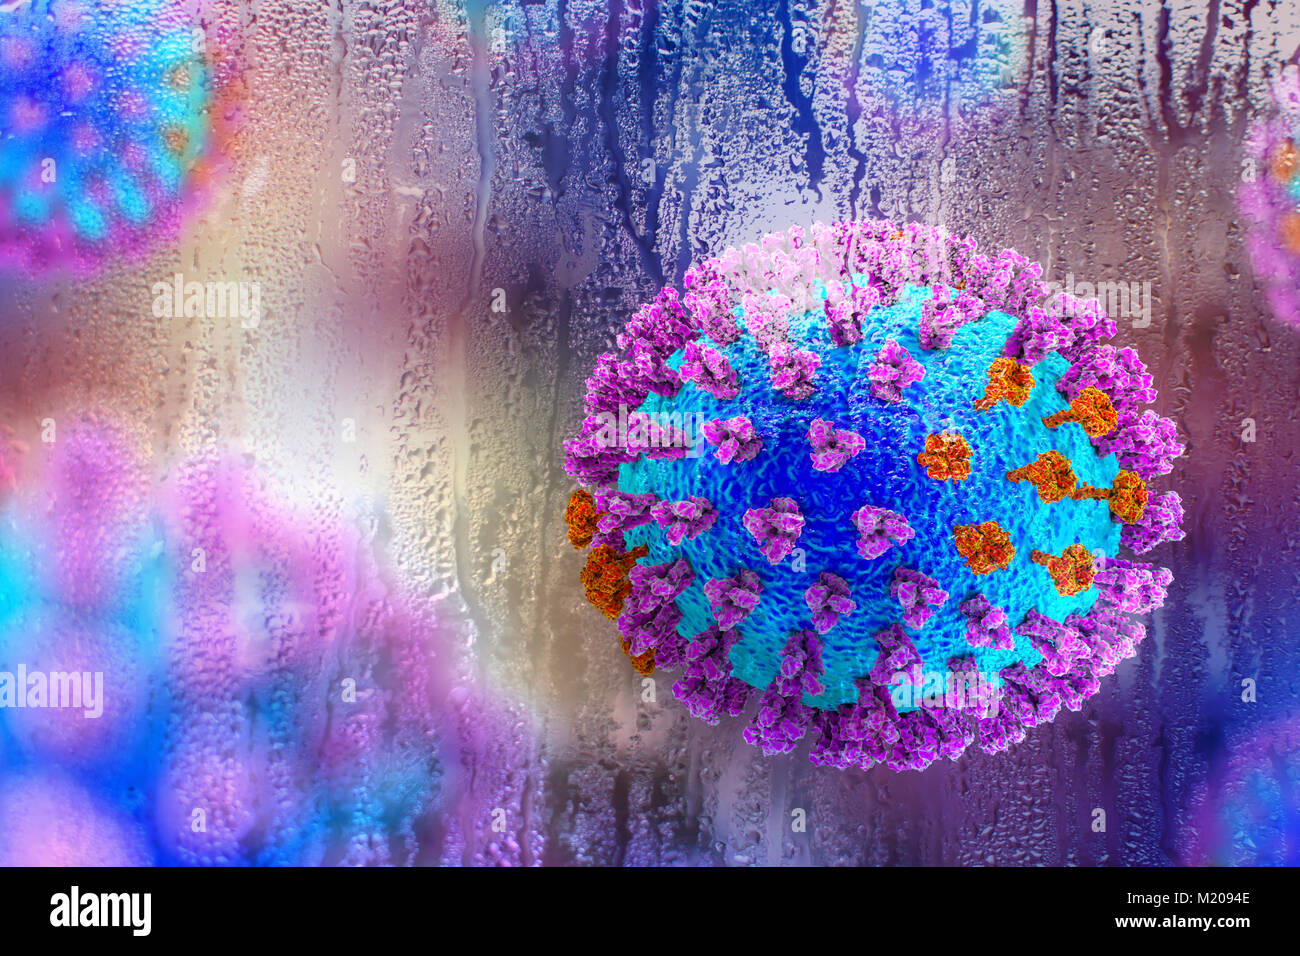 Los virus de la gripe,Ilustración conceptual demostrando carácter estacional de las infecciones respiratorias con el aumento de la incidencia de la gripe en frío lluvioso.Cada virus consta de un núcleo de ARN (ácido ribonucleico) material genético rodeado por una capa de proteína (azul).incrustado en el escudo son proteínas de superficie (picos).Hay dos tipos de proteínas de superficie, hemaglutinina (púrpura) y la neuraminidasa (naranja),y cada uno existe en varios subtipos.ambas proteínas superficiales están asociadas con la patogenicidad del virus.la hemaglutinina se une a las células del huésped, permitiendo que el virus para entrar en ellos y replicarse. Foto de stock